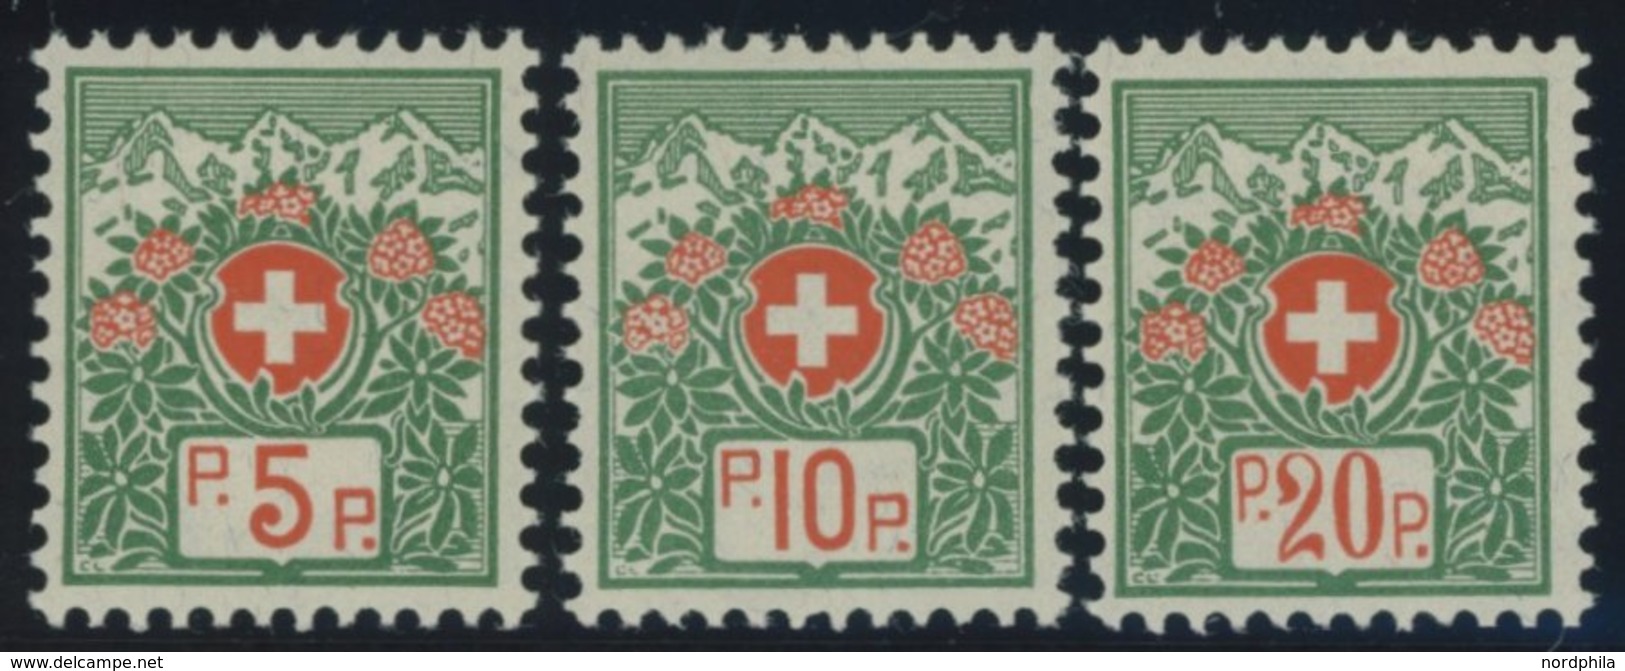 PORTOFREIHEITSMARKEN Pf 11-13II *, 1927, 5 - 20 C. Alpenrose, Faserpapier, Ohne Kontrollnummer, Falzreste, Prachtsatz - Franquicia